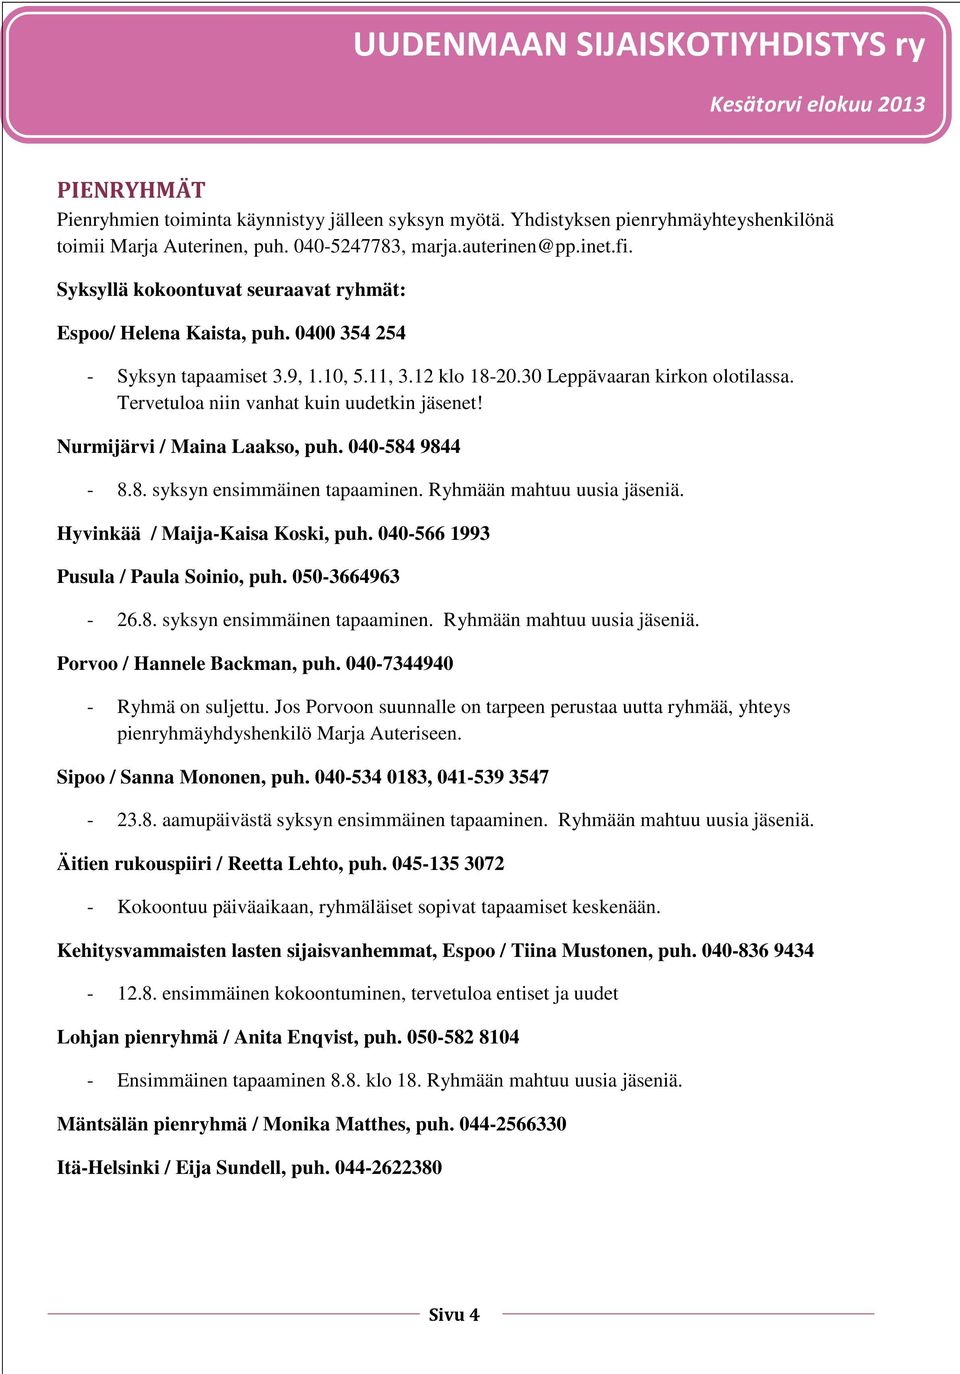 Tervetuloa niin vanhat kuin uudetkin jäsenet! Nurmijärvi / Maina Laakso, puh. 040-584 9844-8.8. syksyn ensimmäinen tapaaminen. Ryhmään mahtuu uusia jäseniä. Hyvinkää / Maija-Kaisa Koski, puh.